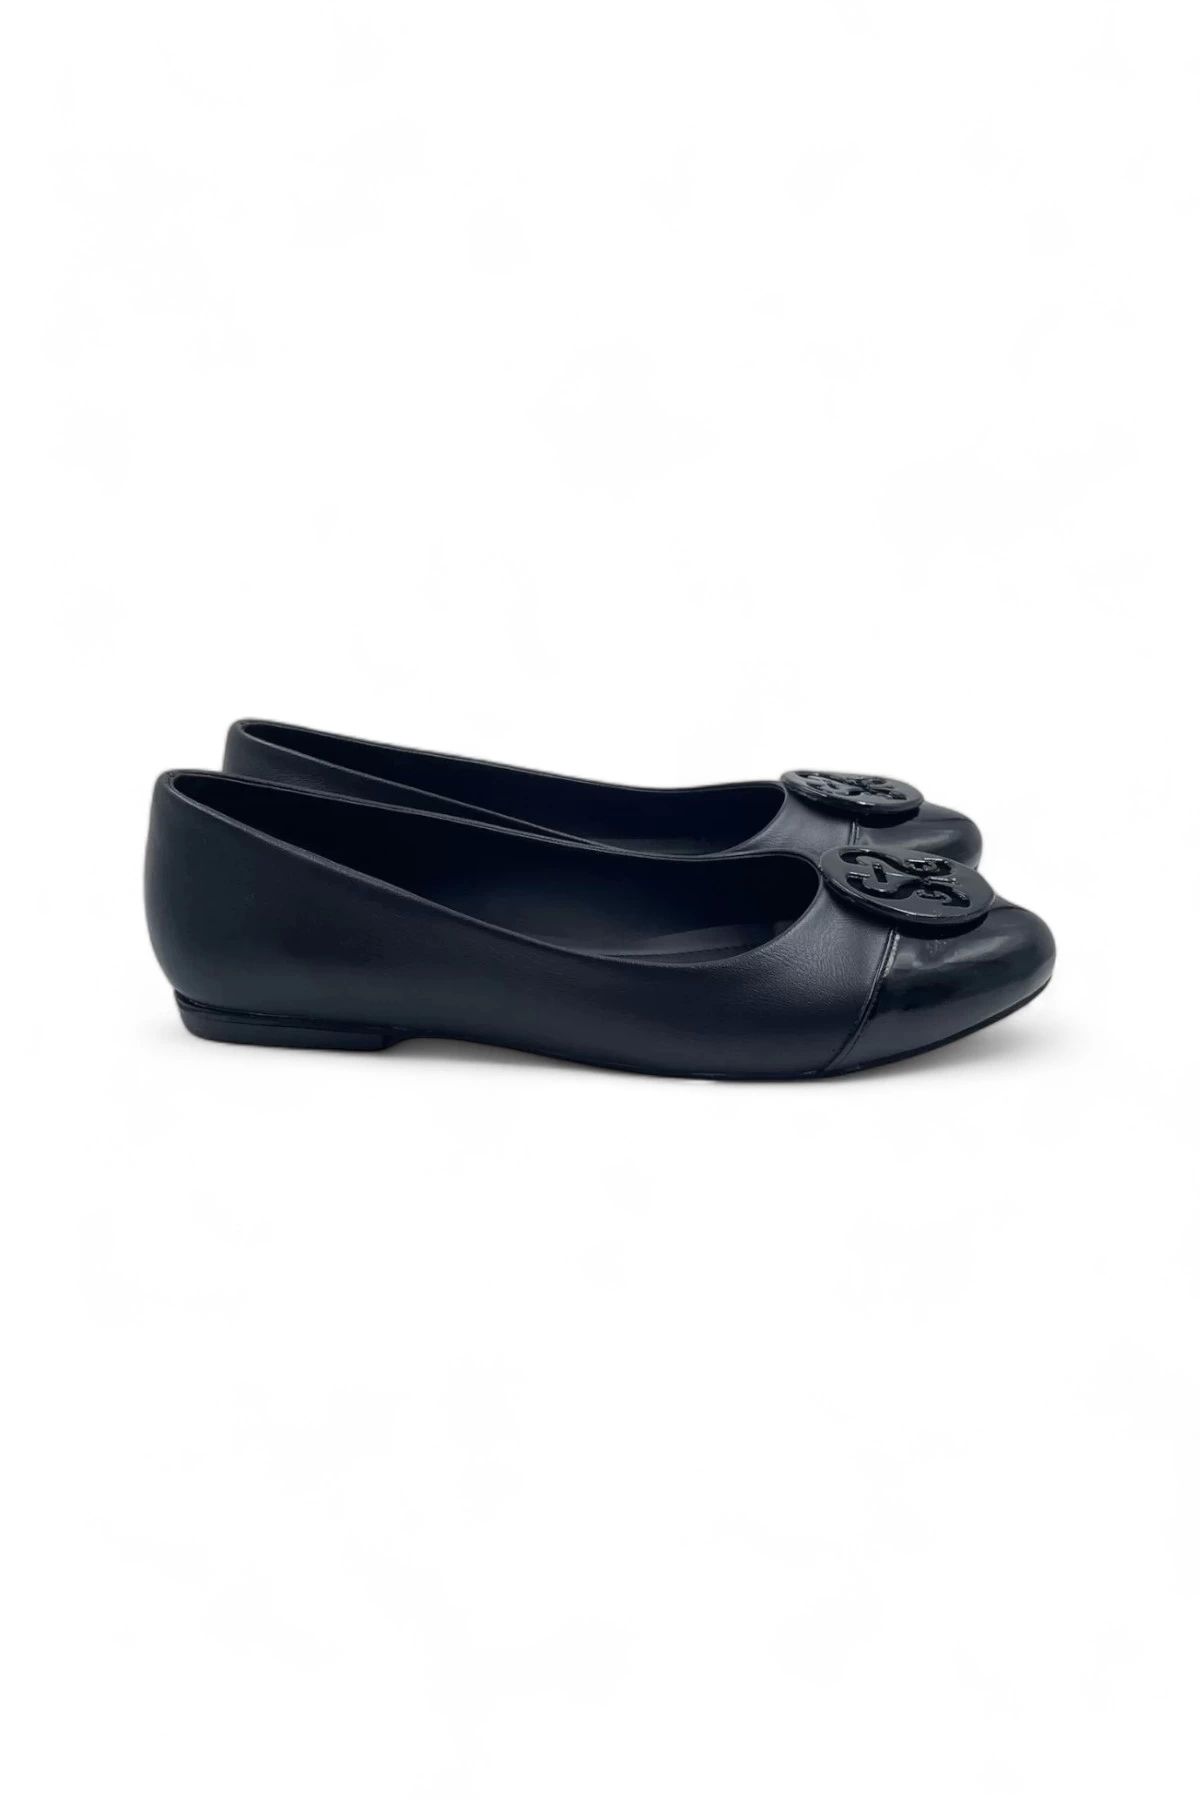 Melen Shoes Mirage Siyah Suni Deri Kadın Babet Ayakkabı